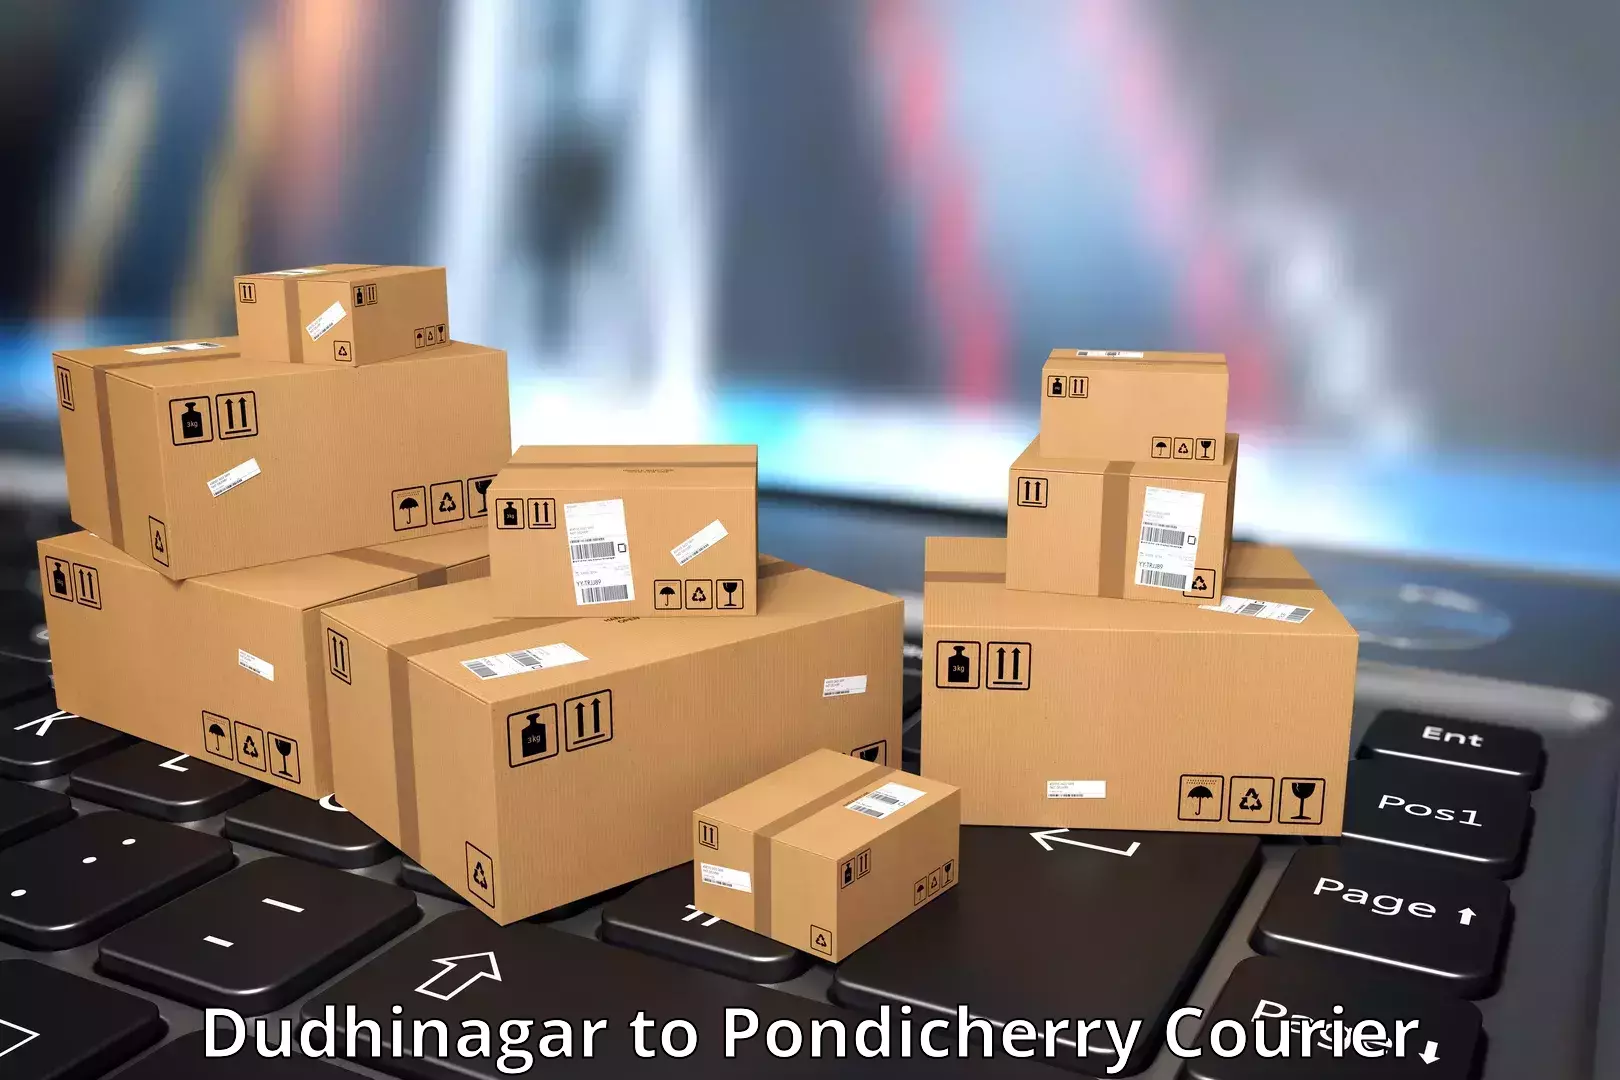 Specialized shipment handling Dudhinagar to Pondicherry University